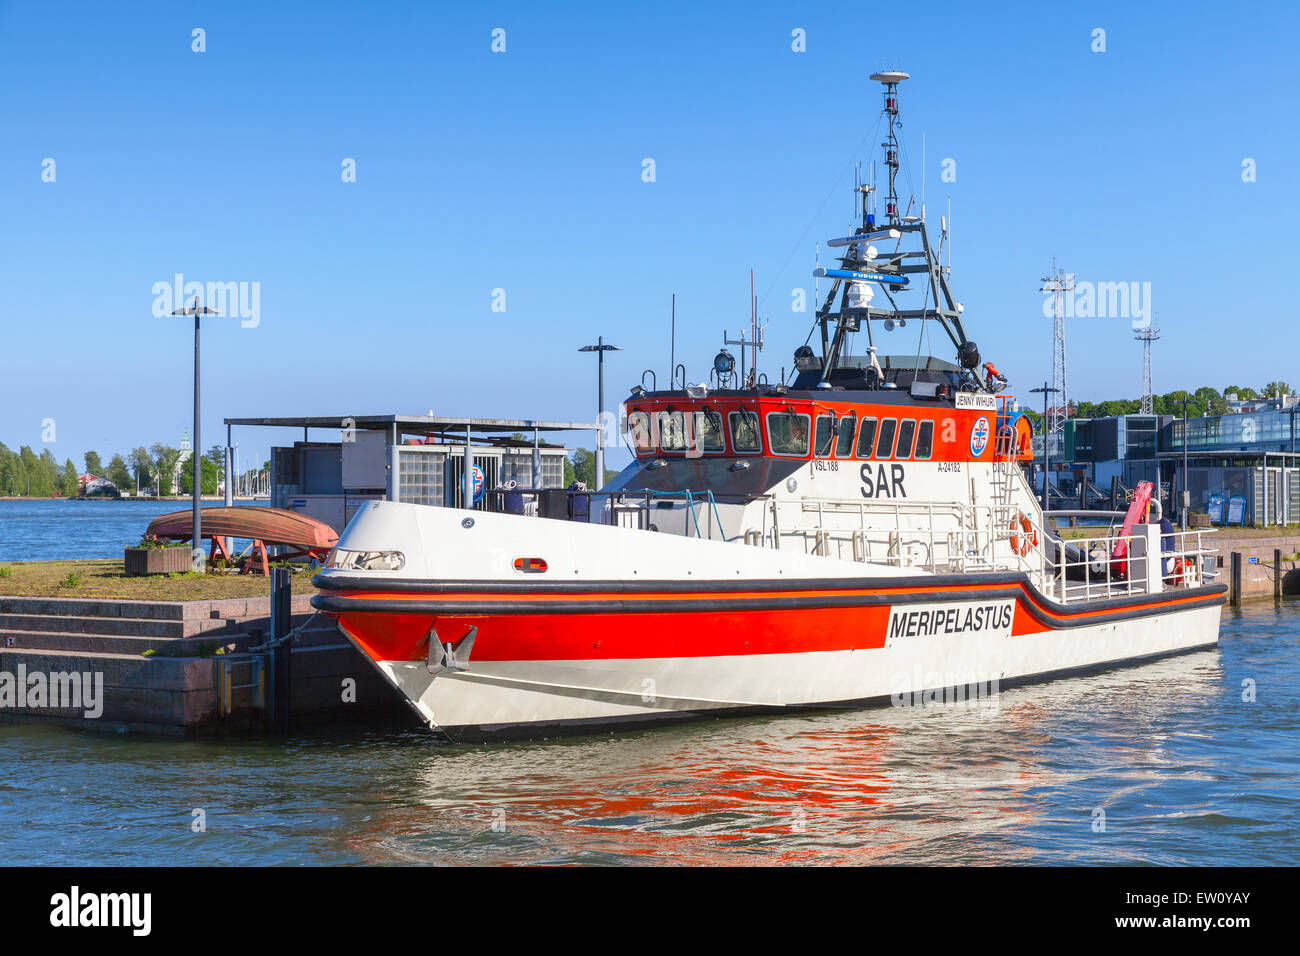 Helsinki, Finnland - 13. Juni 2015: Rettungsboot Jenny Wihuri steht vor Anker im Hafen von Helsinki Passagier Stockfoto